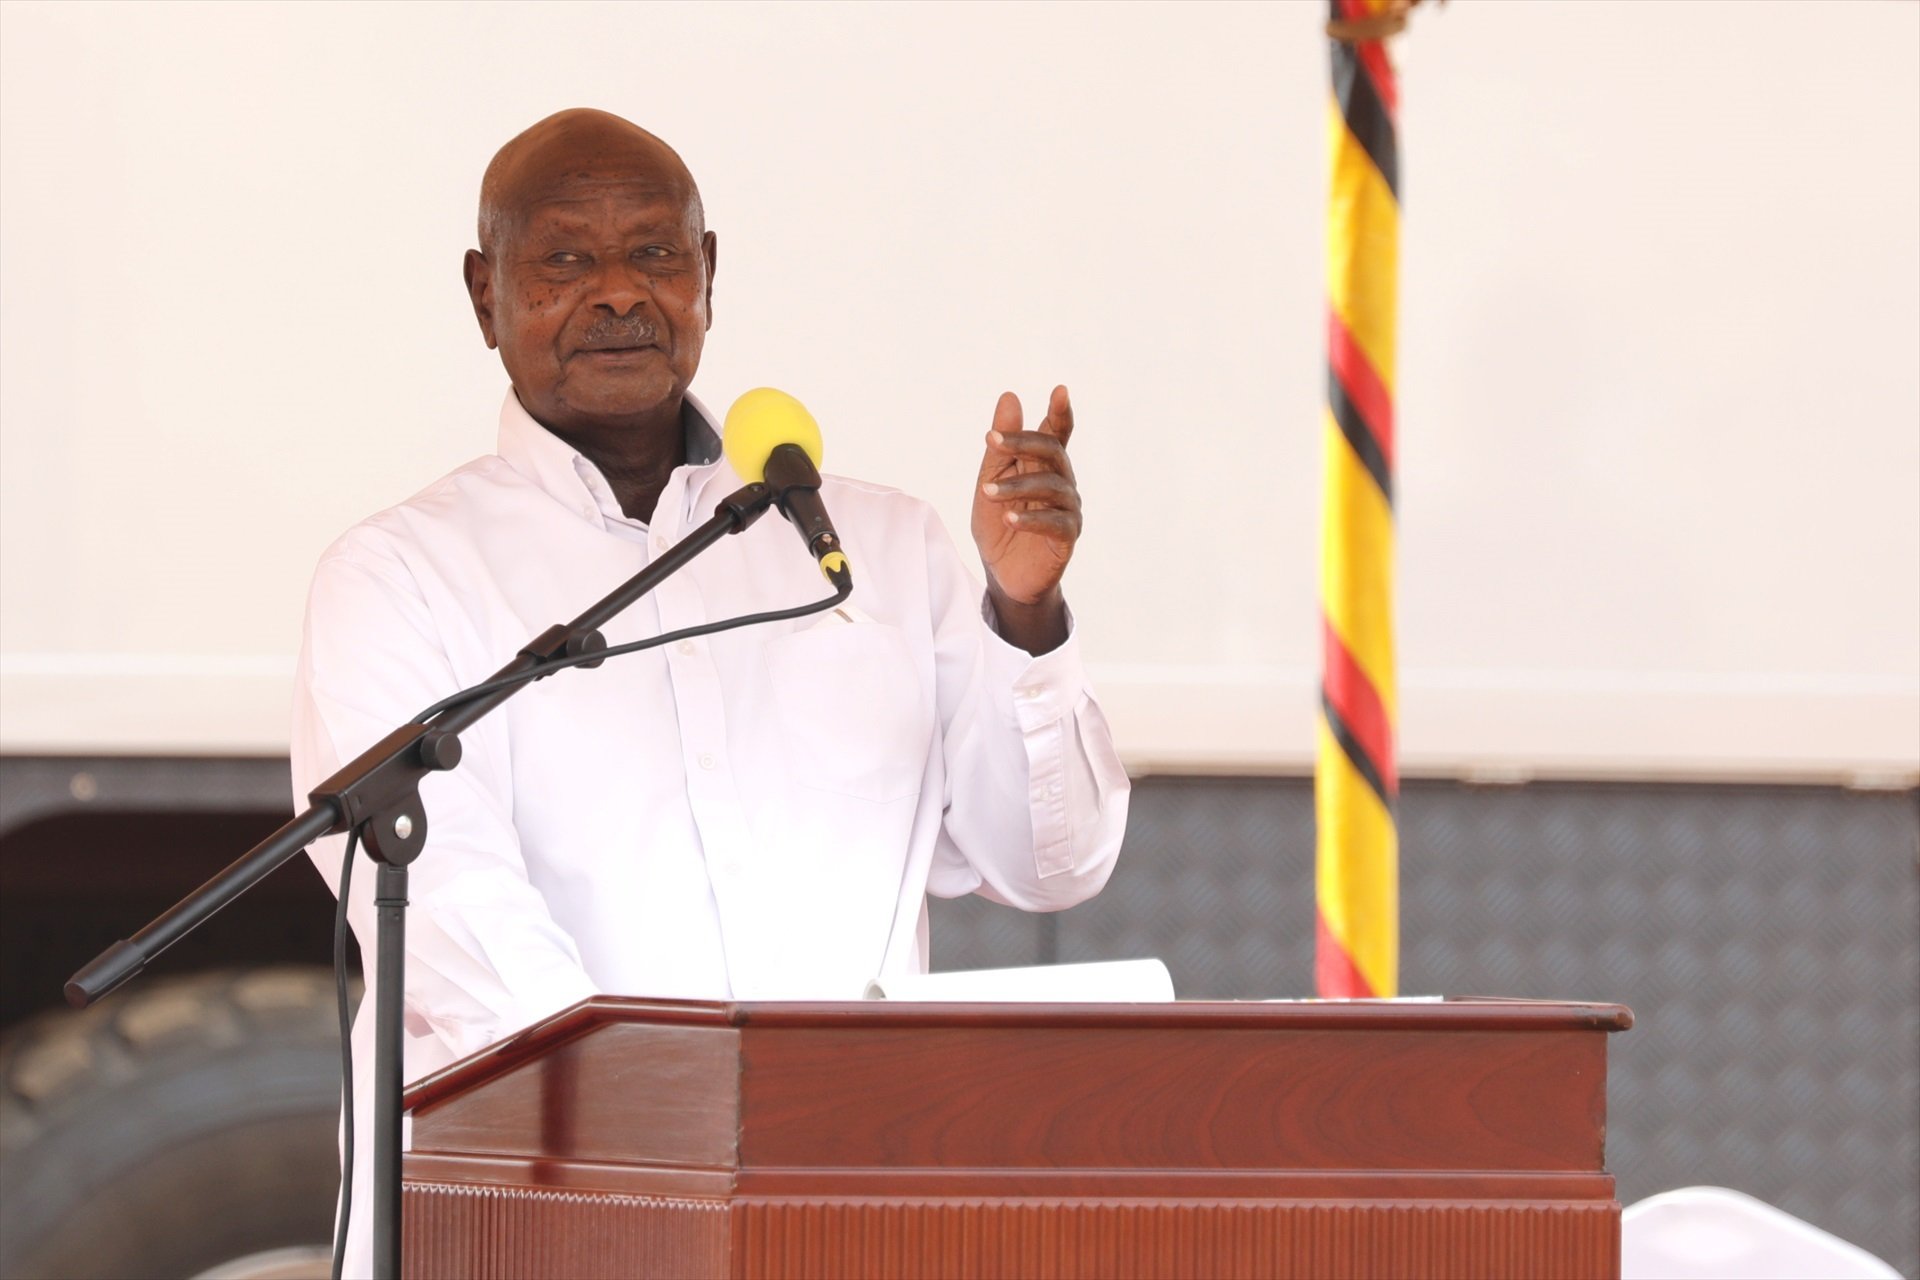 El Parlamento de Uganda vuelve a aprobar la ley anti-LGTBI, a pesar de la presión internacional